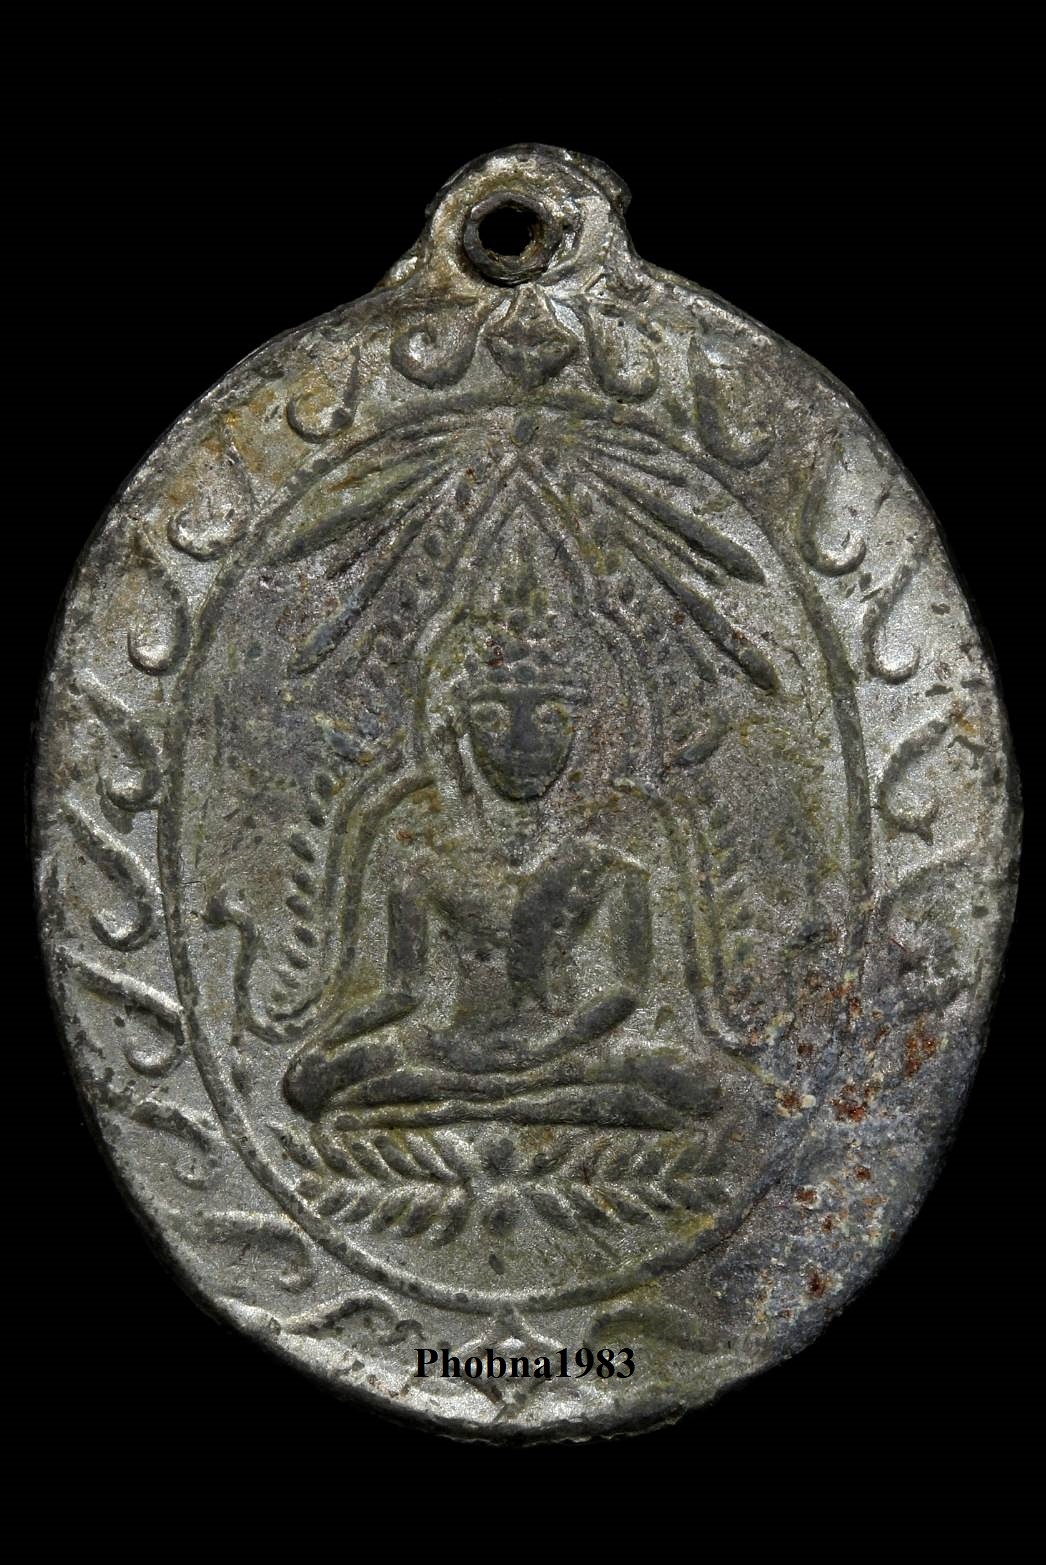  เหรียญพระพุทธชินราช หลวงปู่ศุข